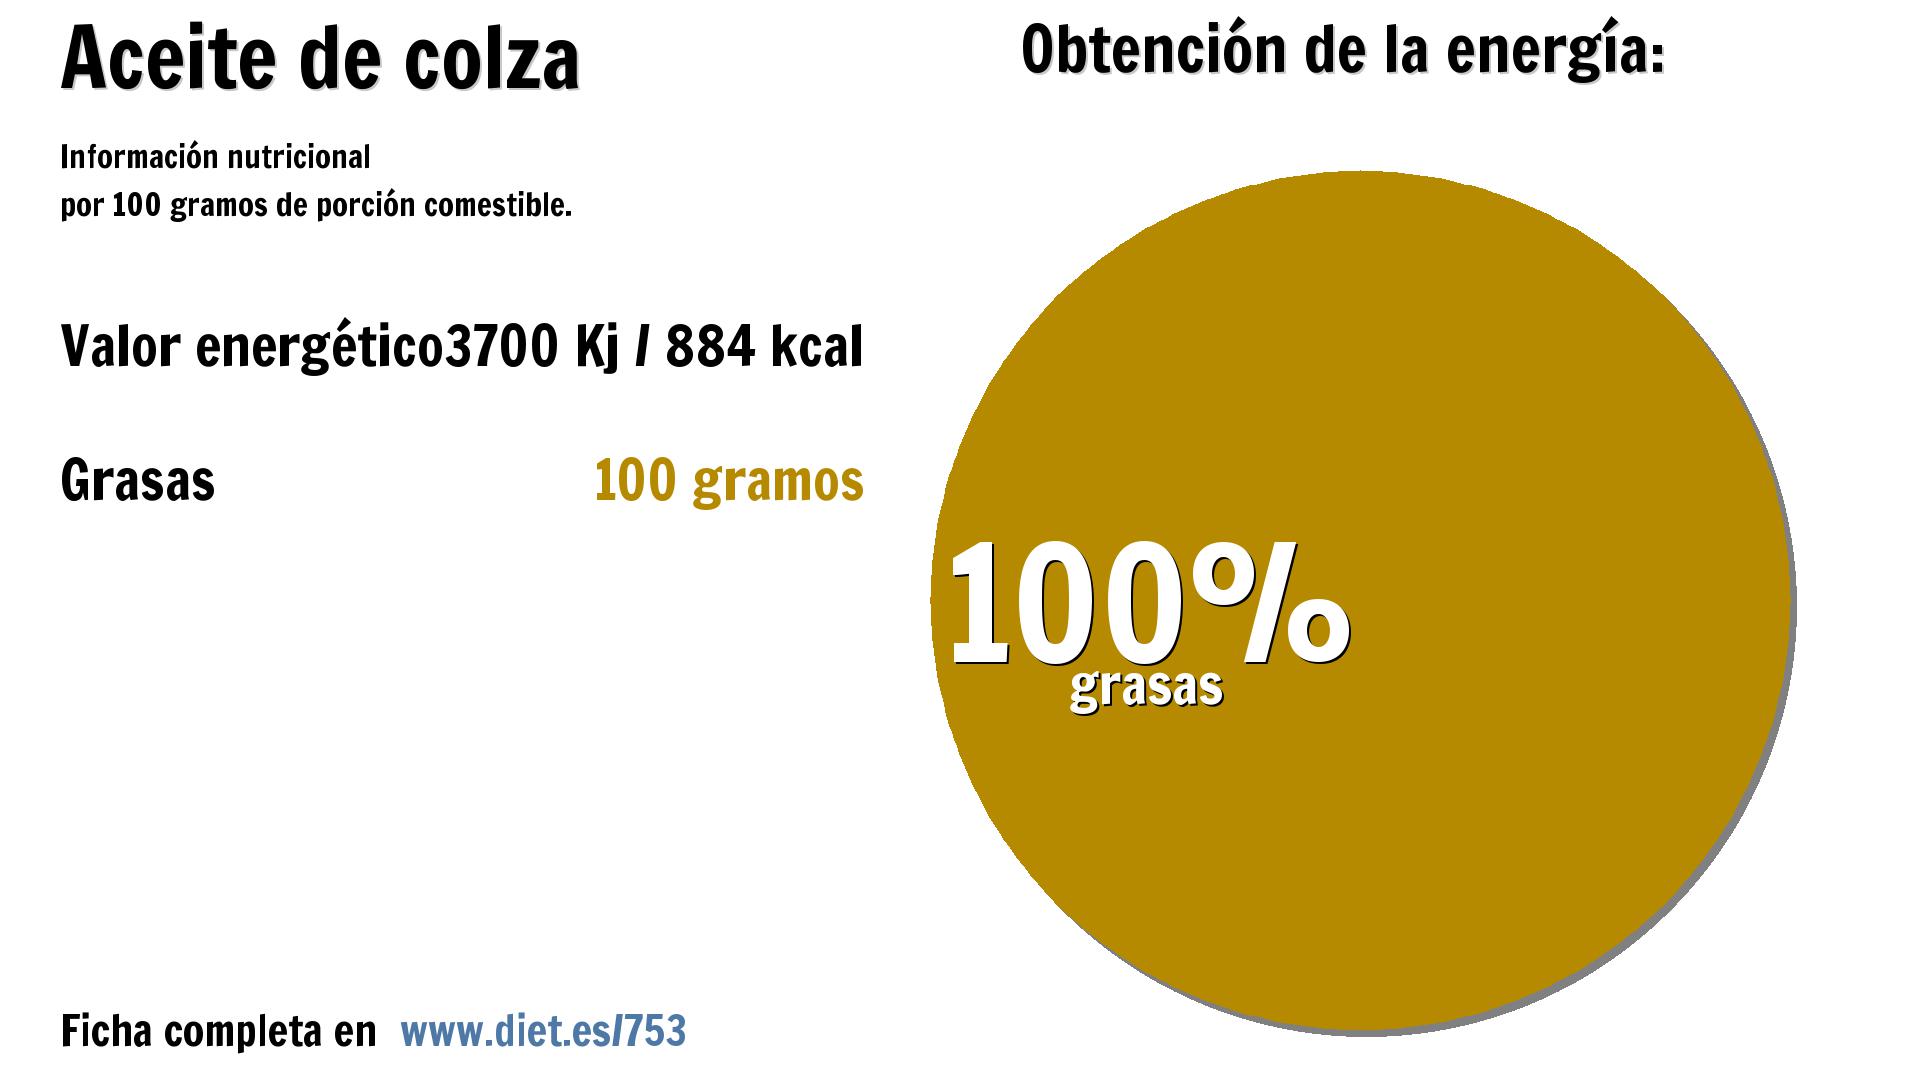 Aceite de colza: energía 3700 Kj y grasas 100 g.